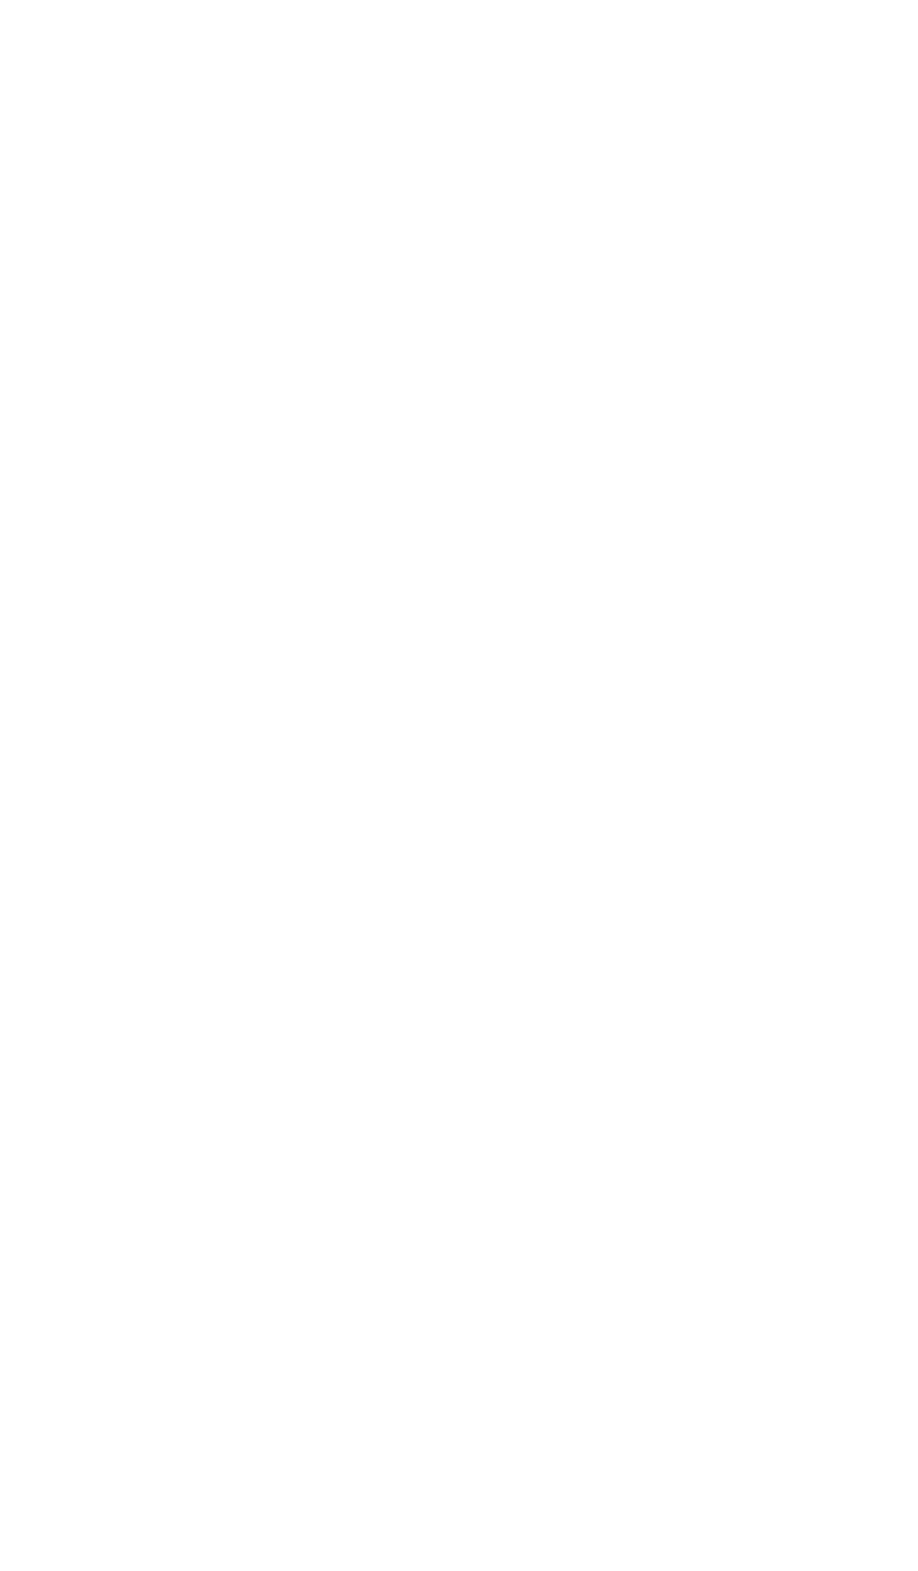 EOG Resources logo for dark backgrounds (transparent PNG)